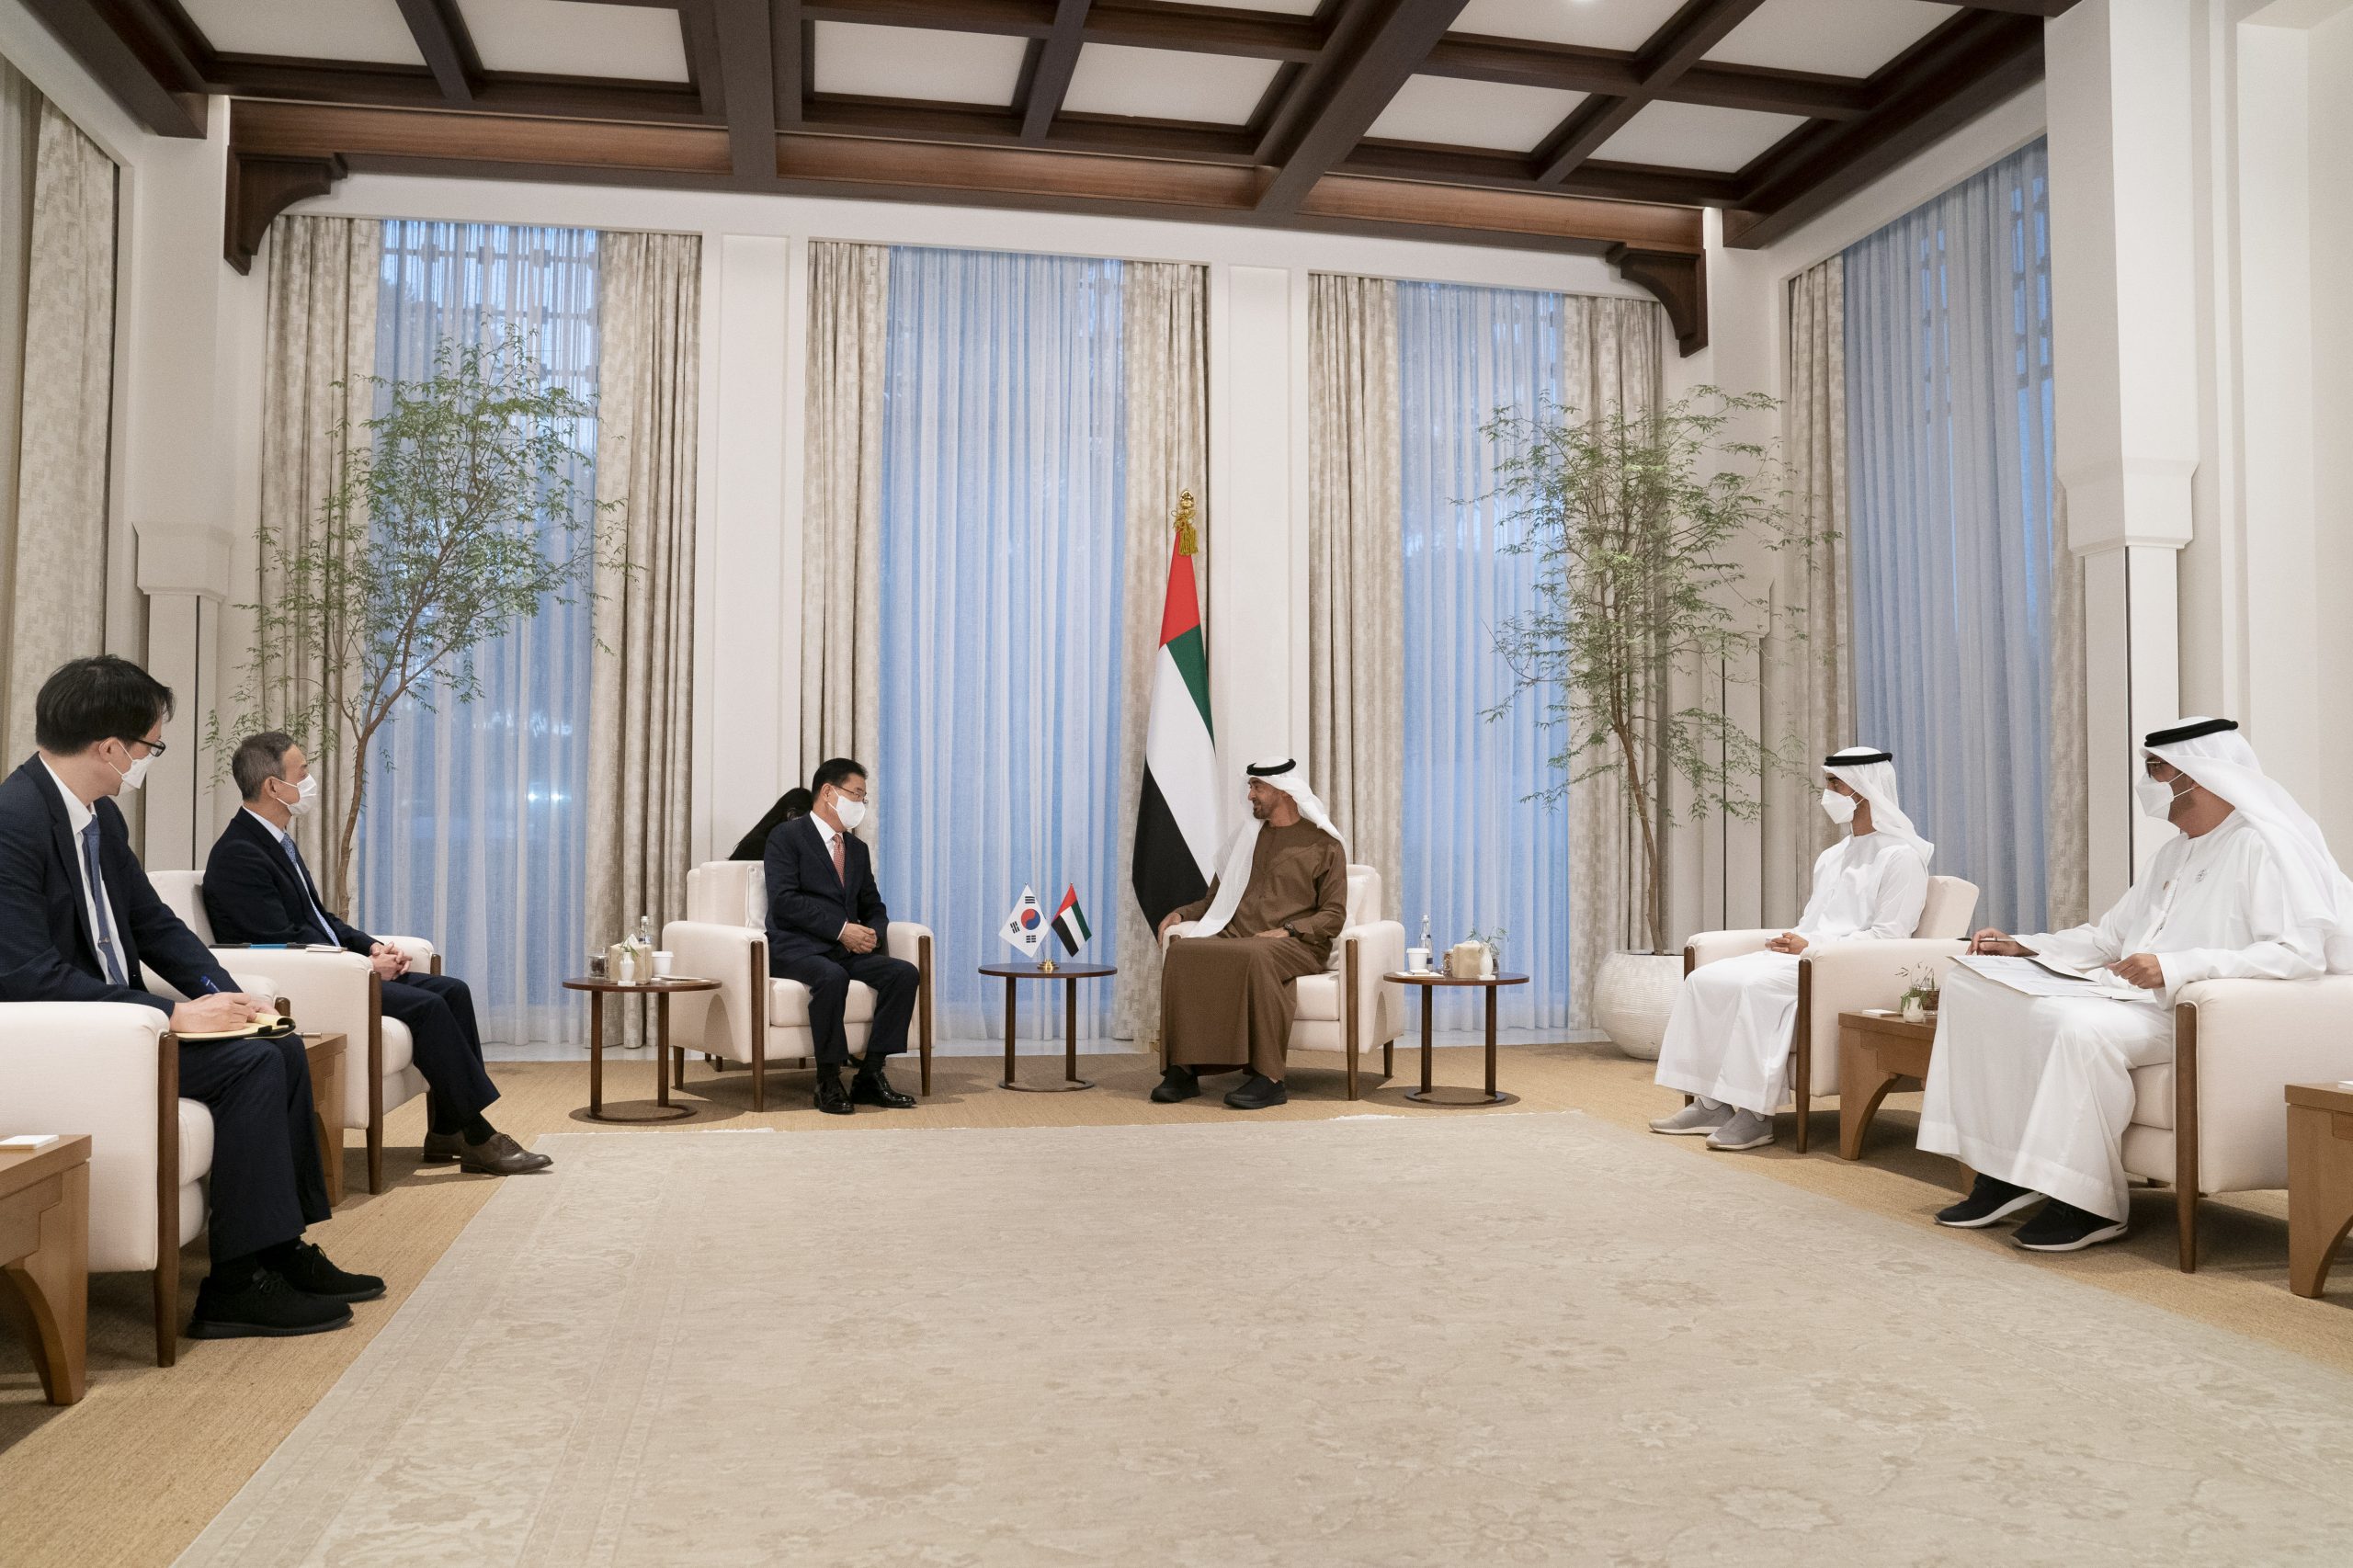 التقى الشيخ محمد بن زايد آل نهيان، ولي عهد أبوظبي نائب القائد الأعلى للقوات المسلحة وزير خارجية كوريا الجنوبية جيونغ وي يونغ.